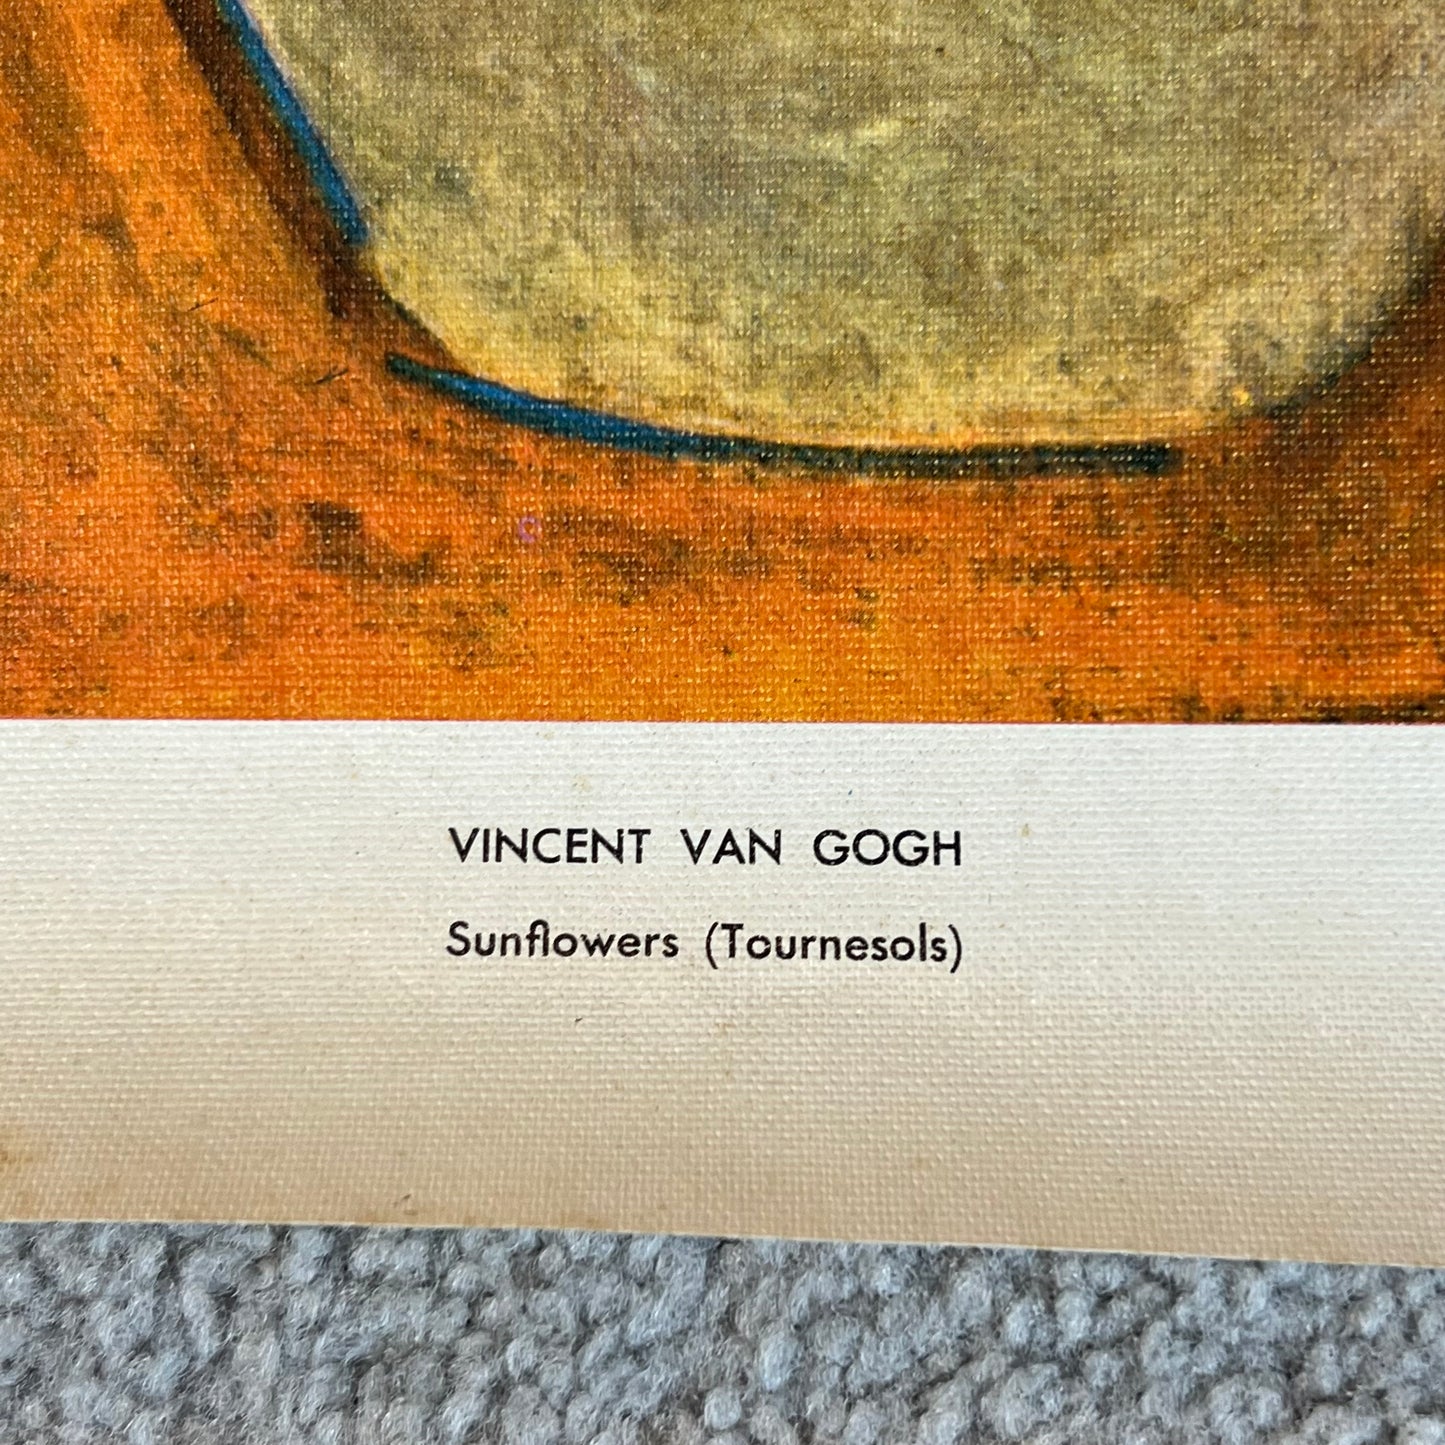 Vintage Vincent Van Gogh Sunflowers Print Louvre Museum Paris